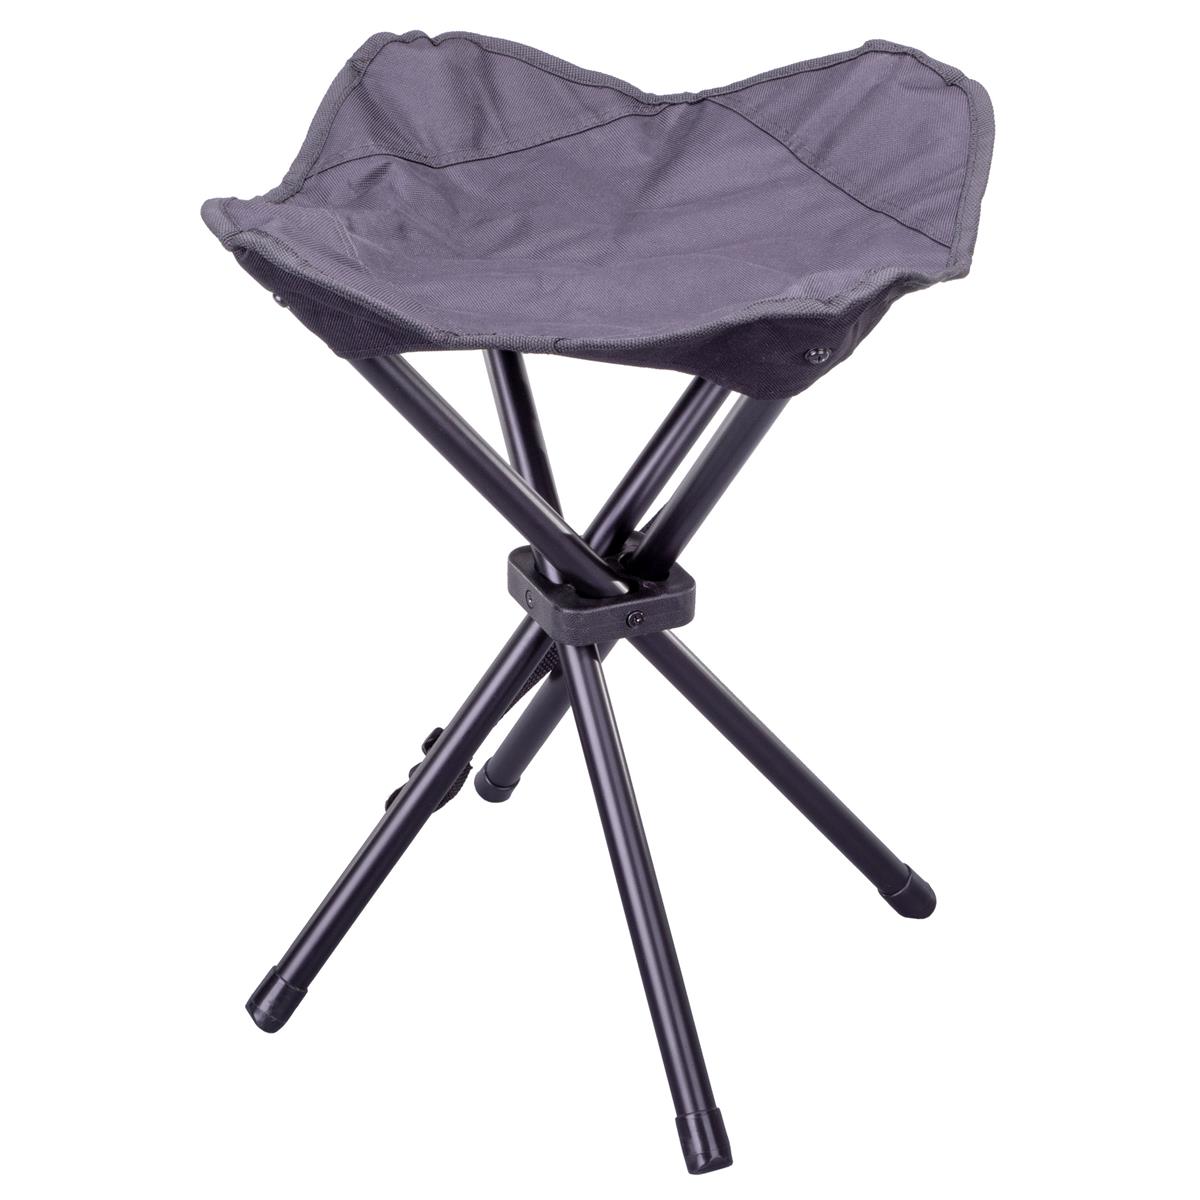 Camping-Stuhl Sitzhocker Falthocker klappbar schwarz für Angeln Wandern Trekking